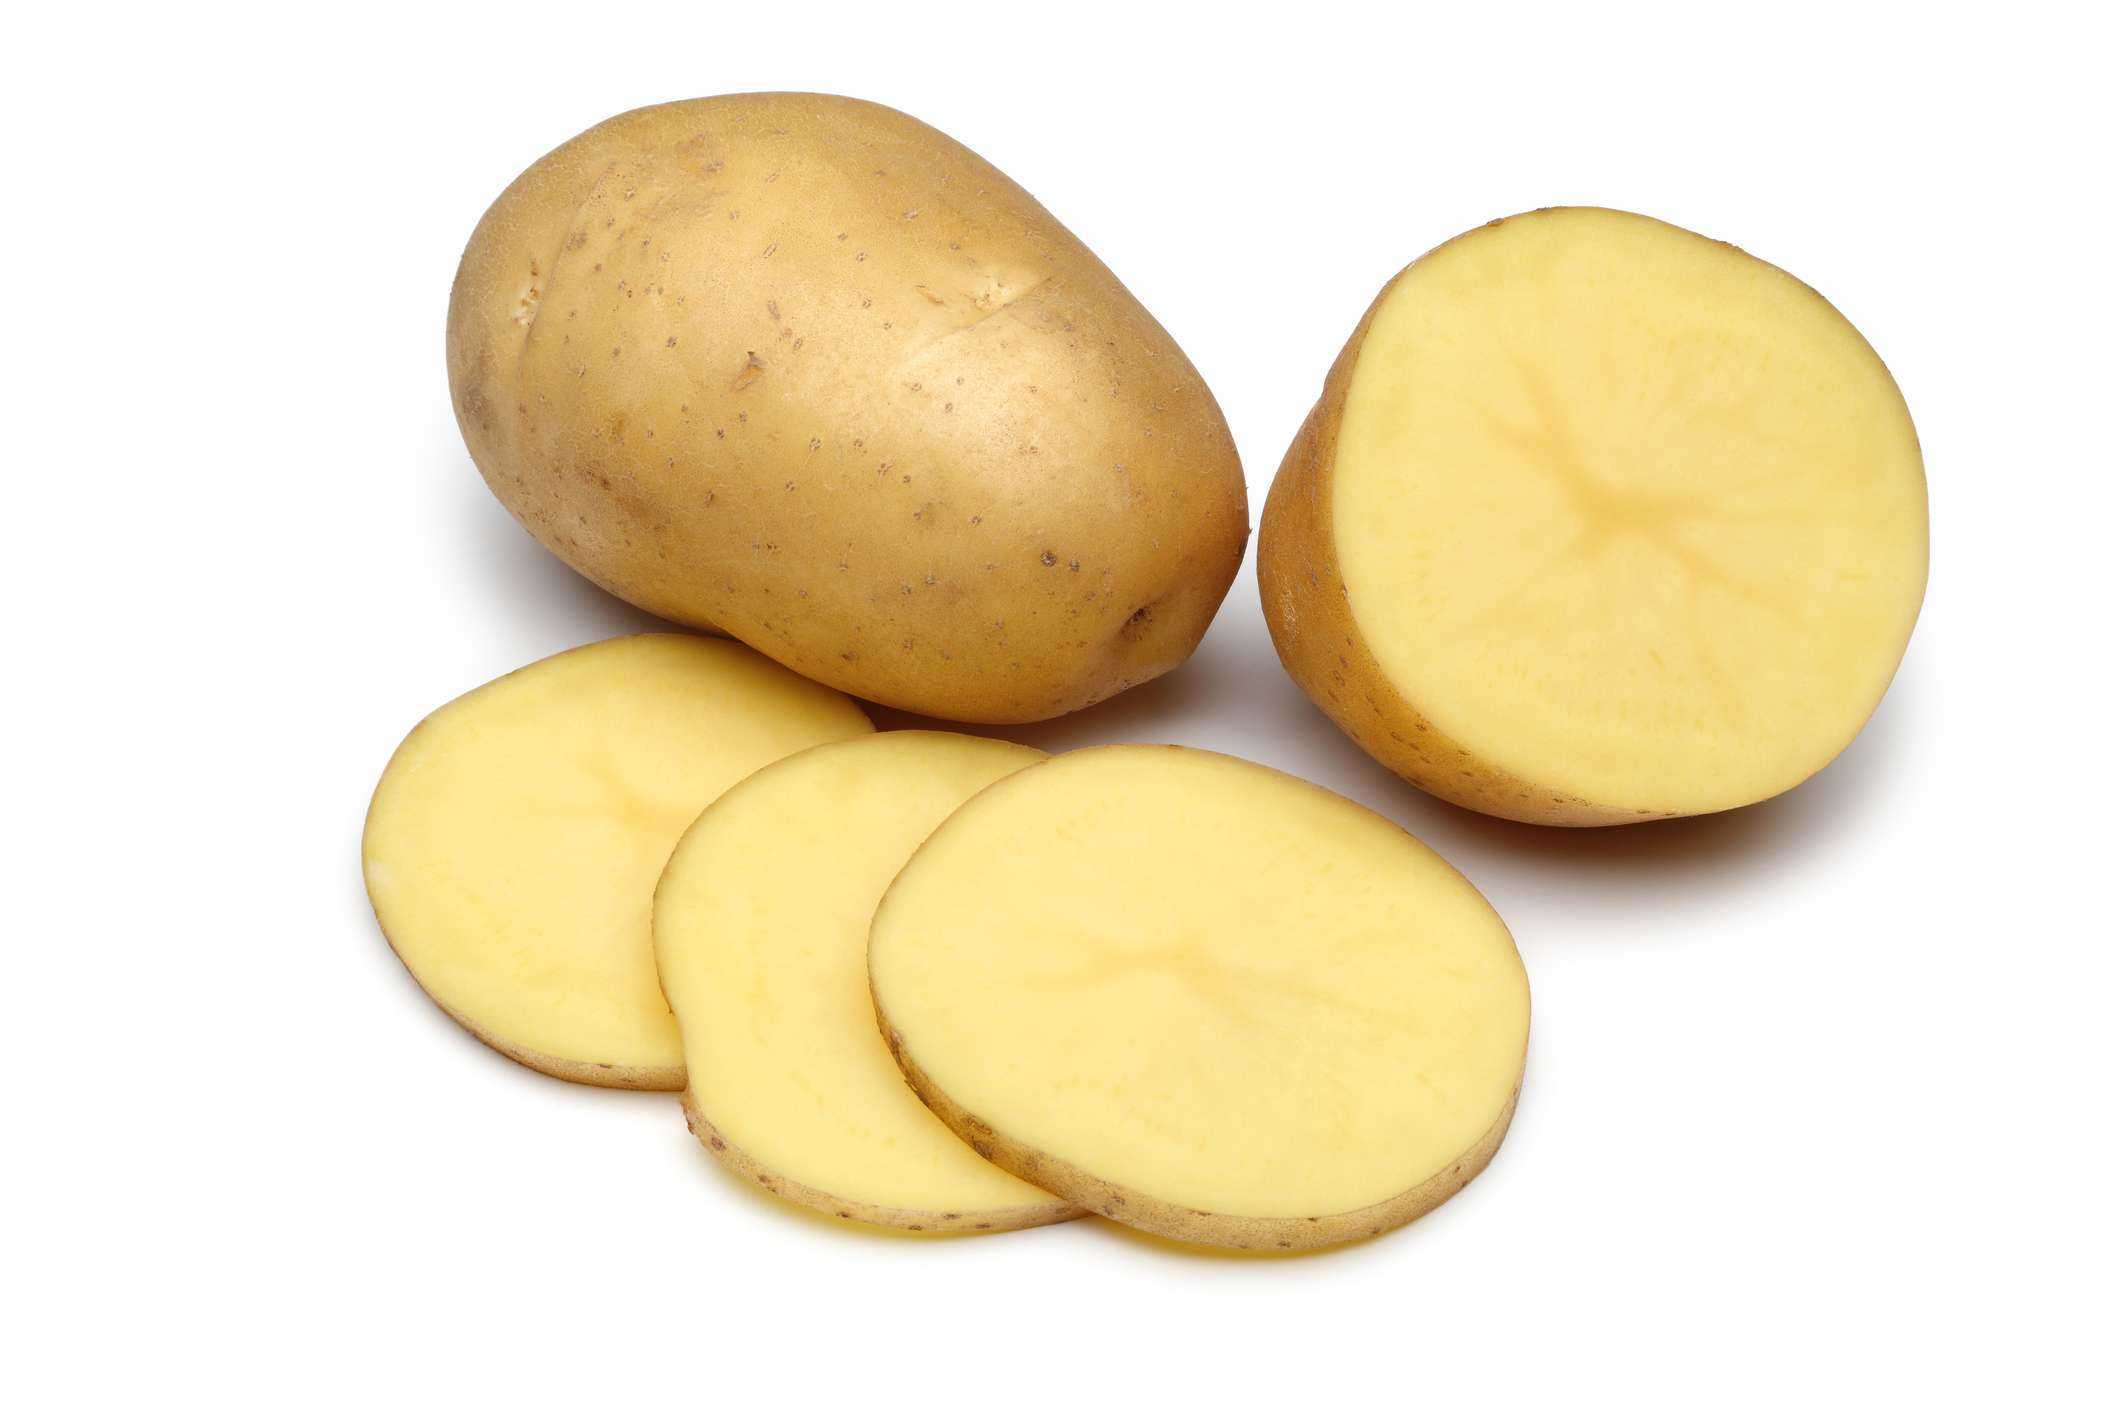 La patata tiene lactosa